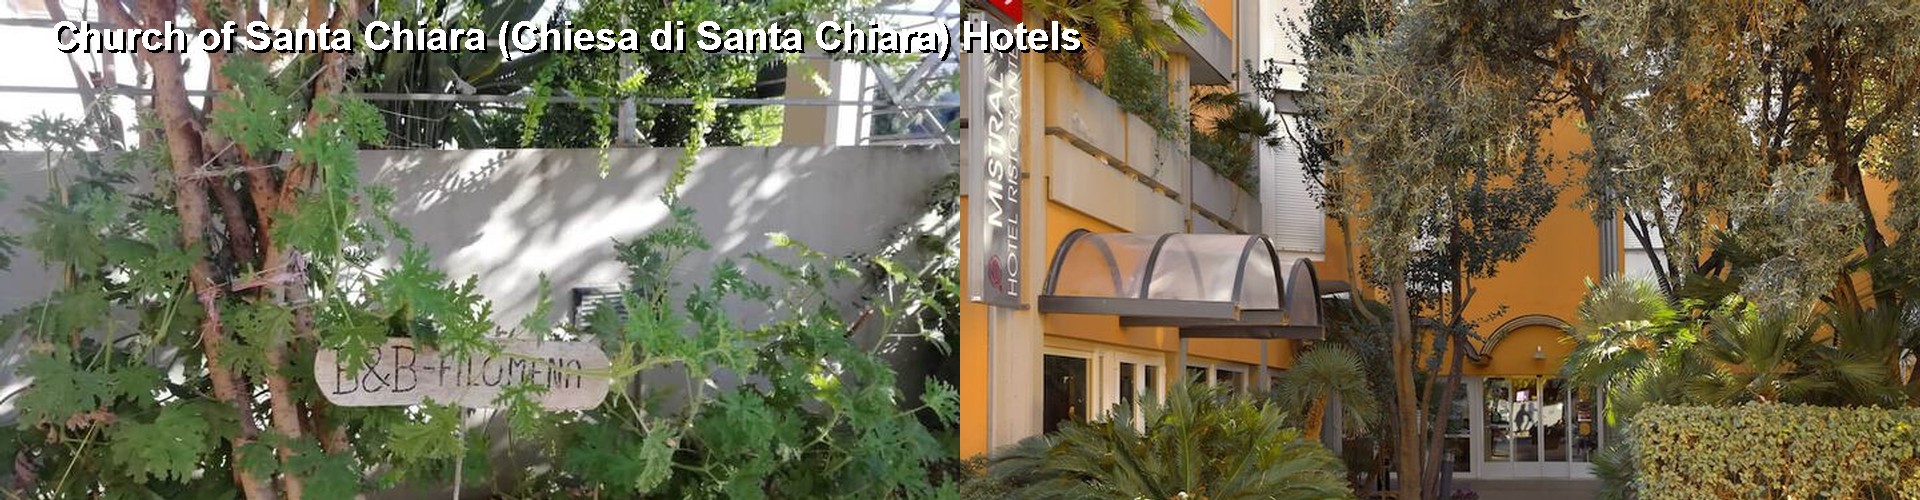 3 Best Hotels near Church of Santa Chiara (Chiesa di Santa Chiara)